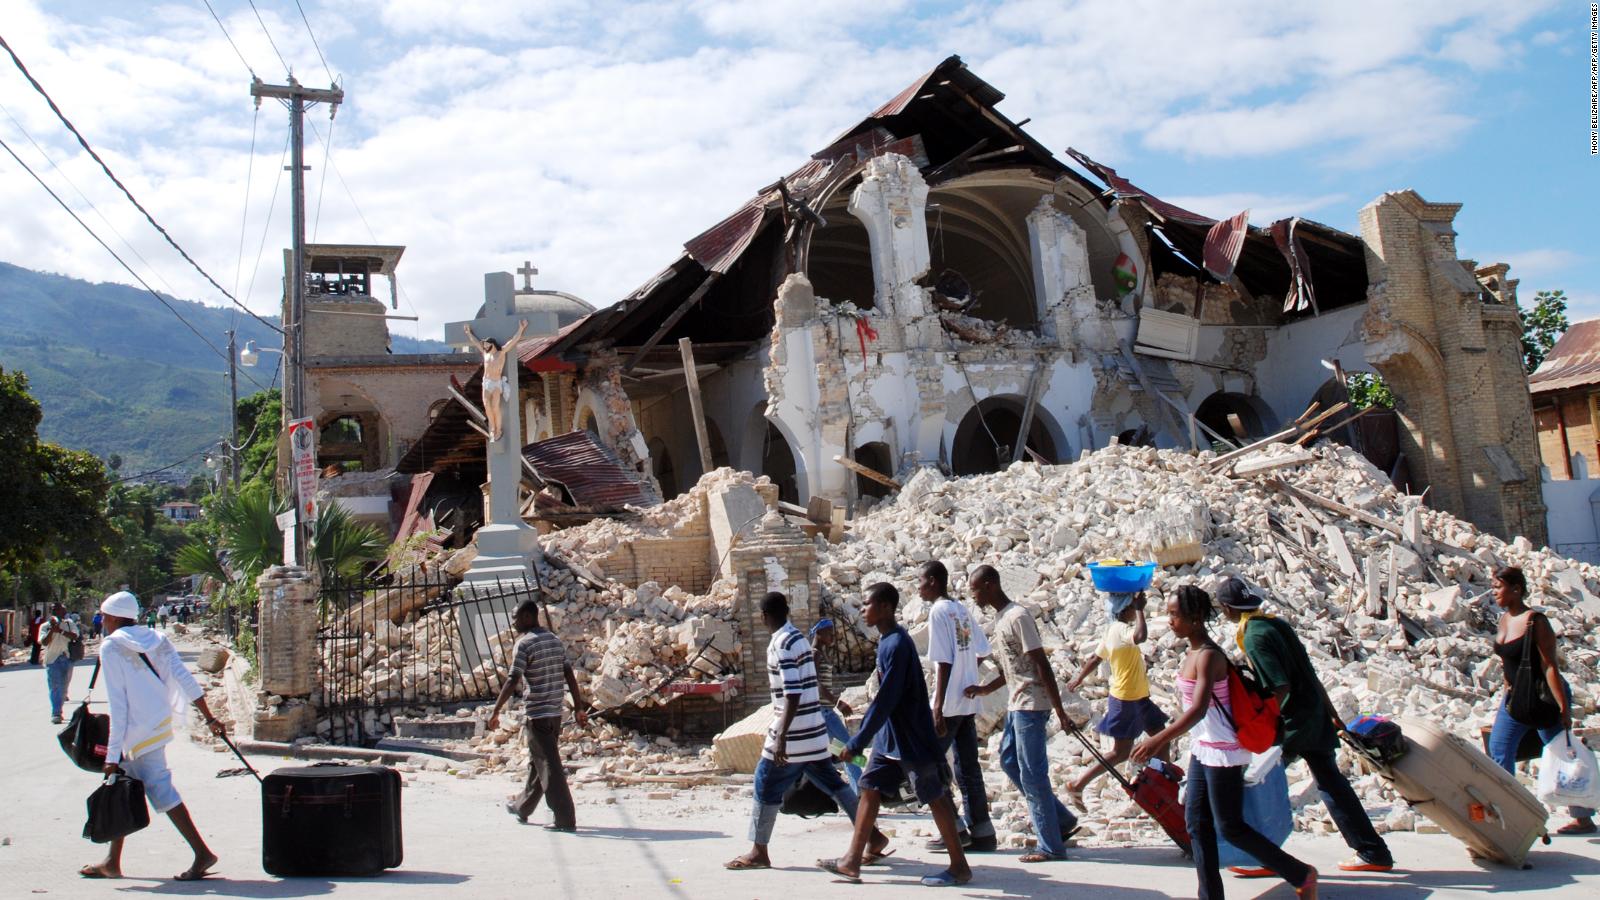 Haiti's earthquake anniversary brings little hope CNN